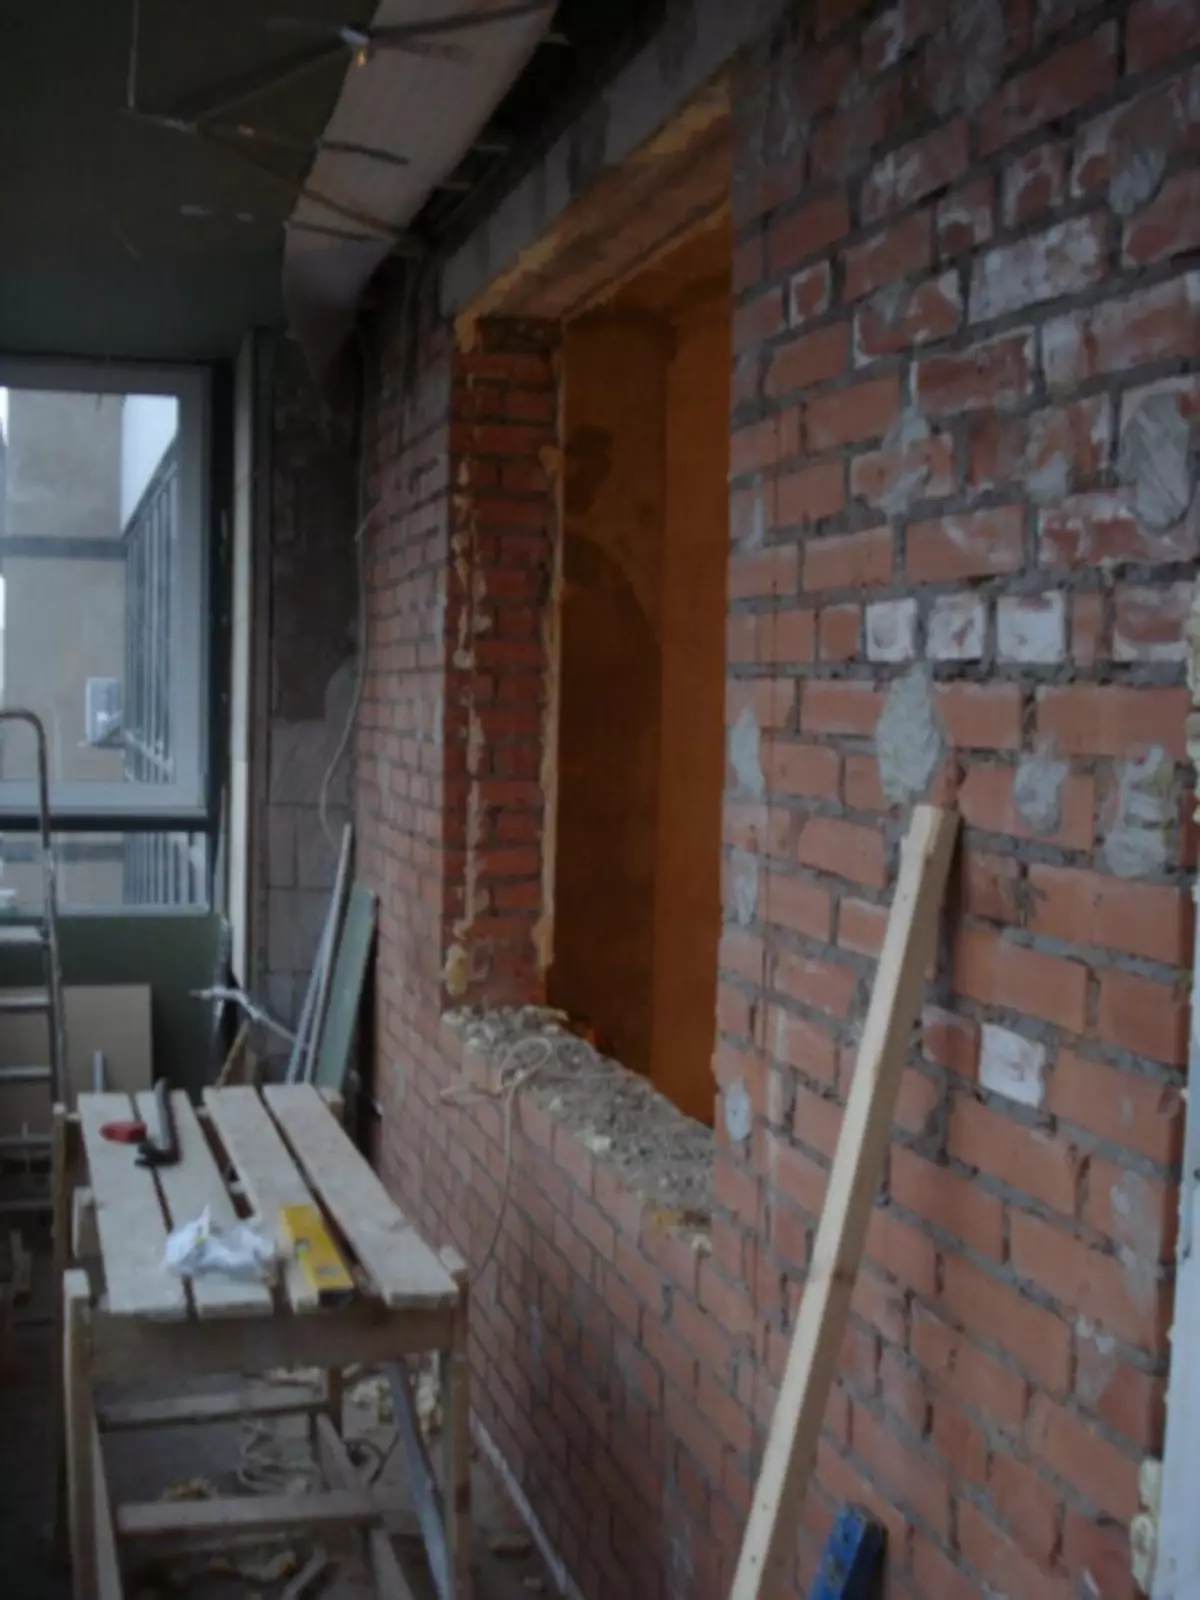 Apertura della finestra in un muro di mattoni e in legno